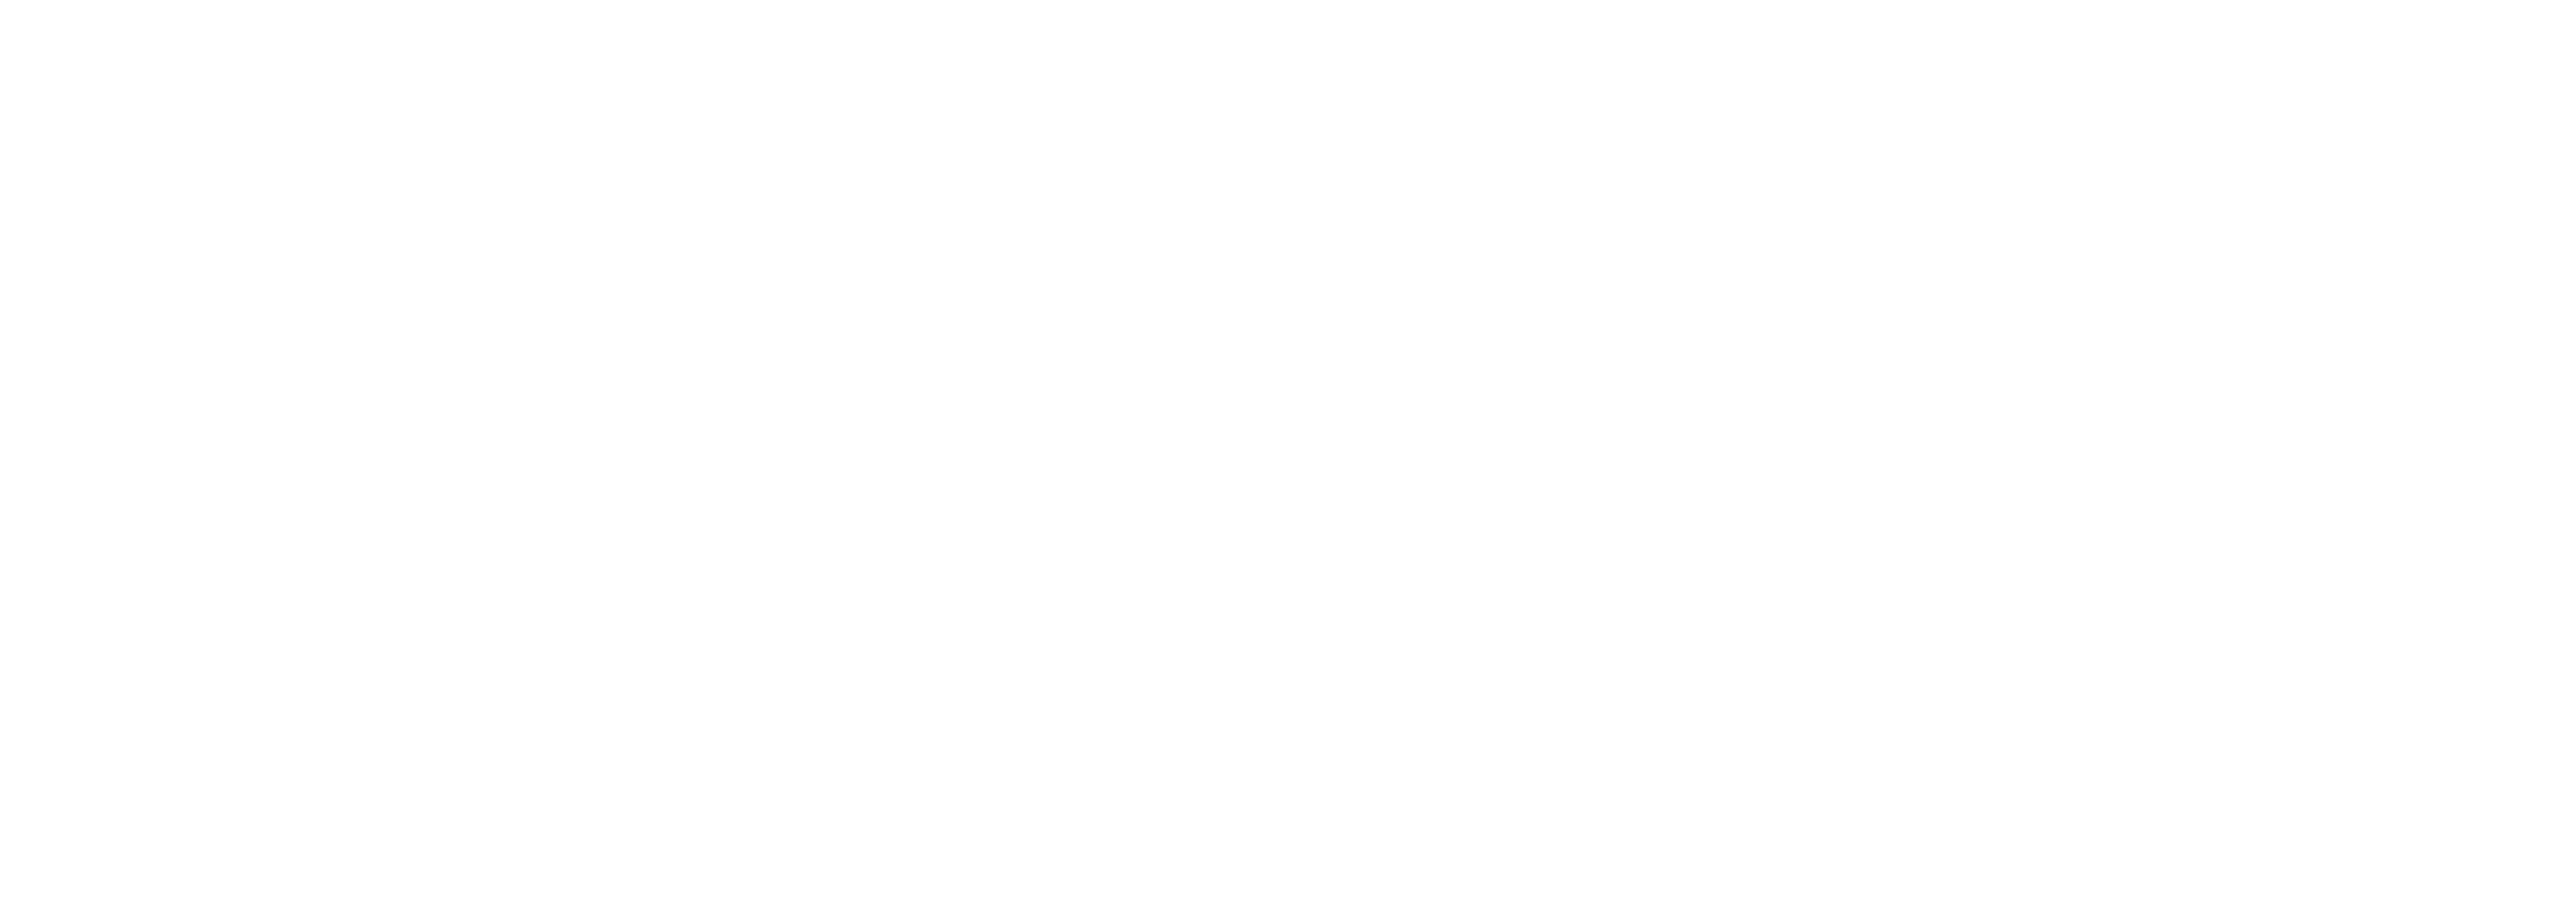 Rail Yard Email Logo